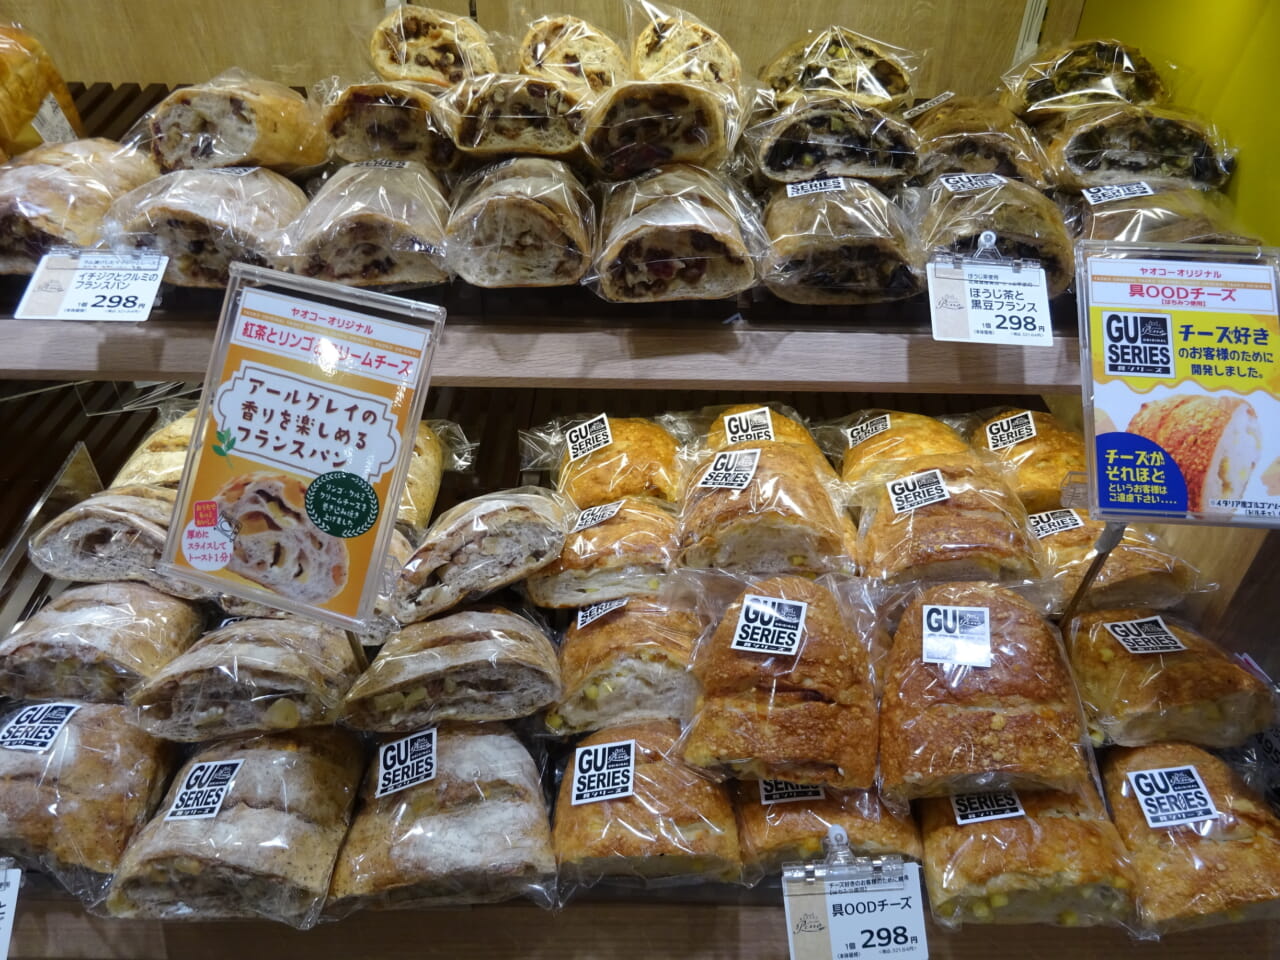 インストアベーカリーでは、具材を混ぜ込んだフランスパンを大きくコーナー化していた